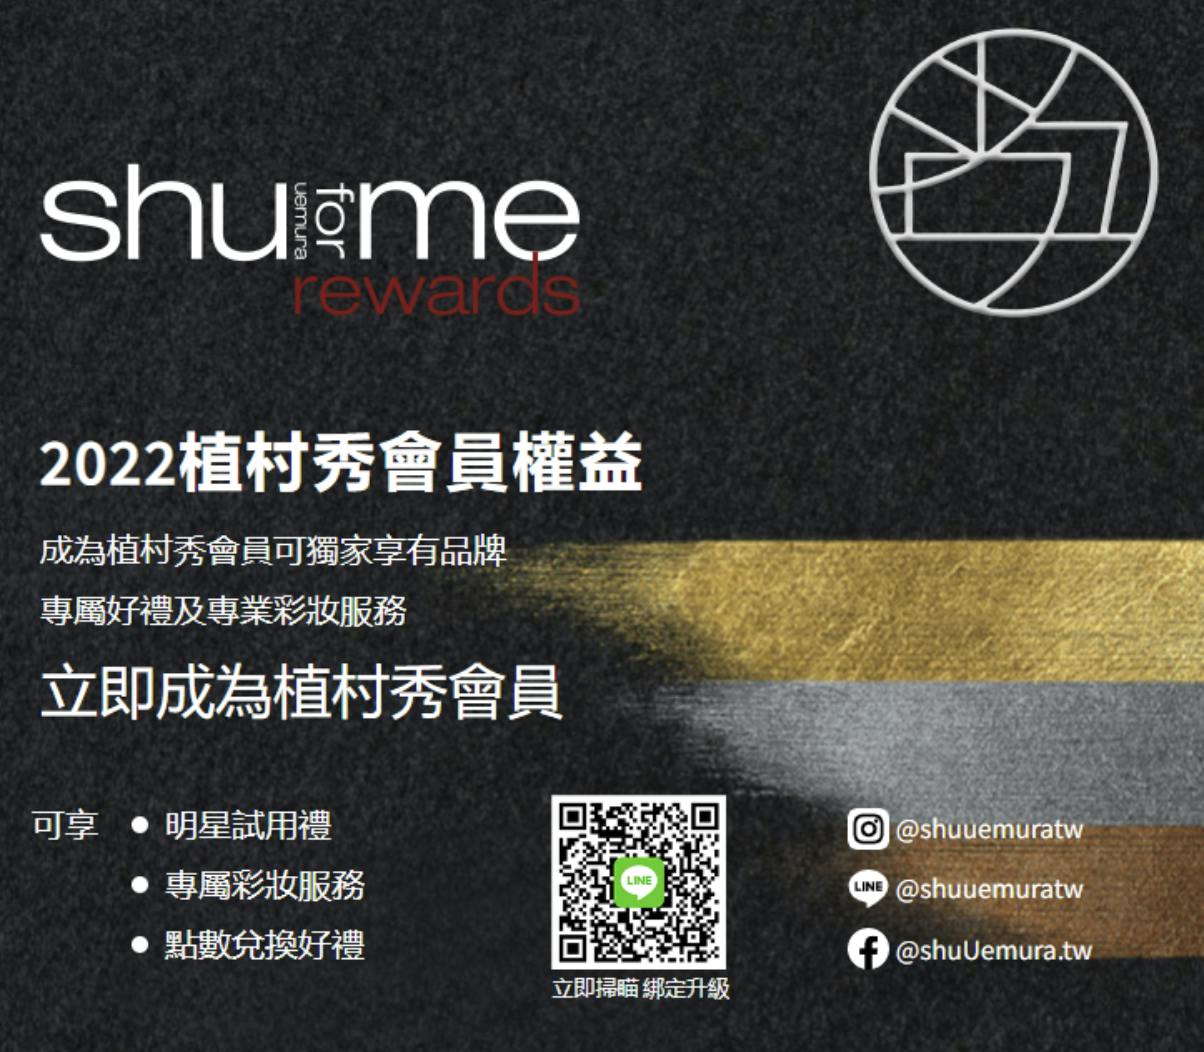 Shu uemura's membership